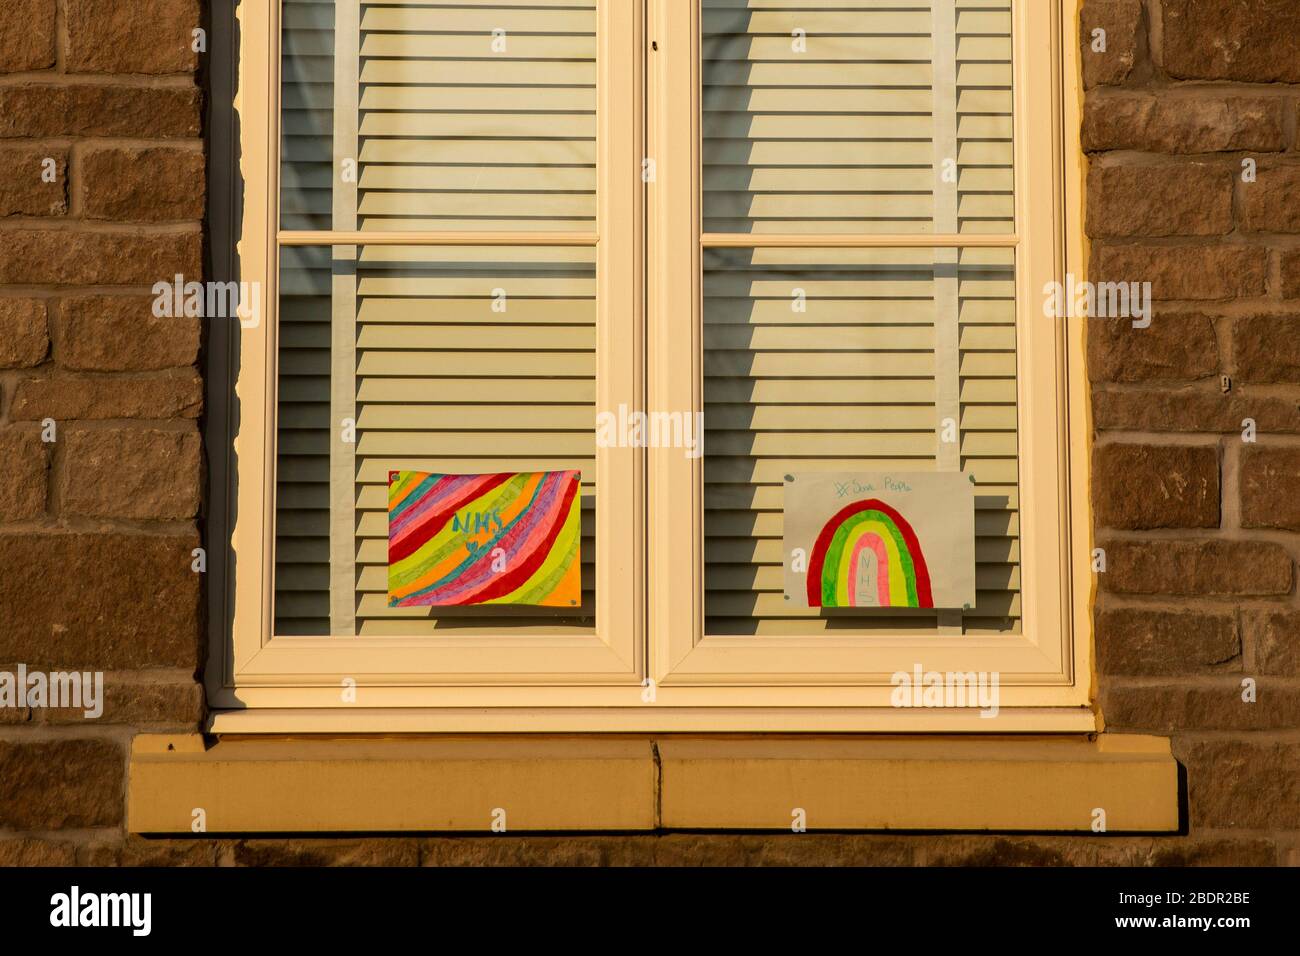 Obras de arte arcoiris para niños que apoyan el NHS durante el brote de coronavirus en la ventana de una casa, abril de 2020. Foto de stock